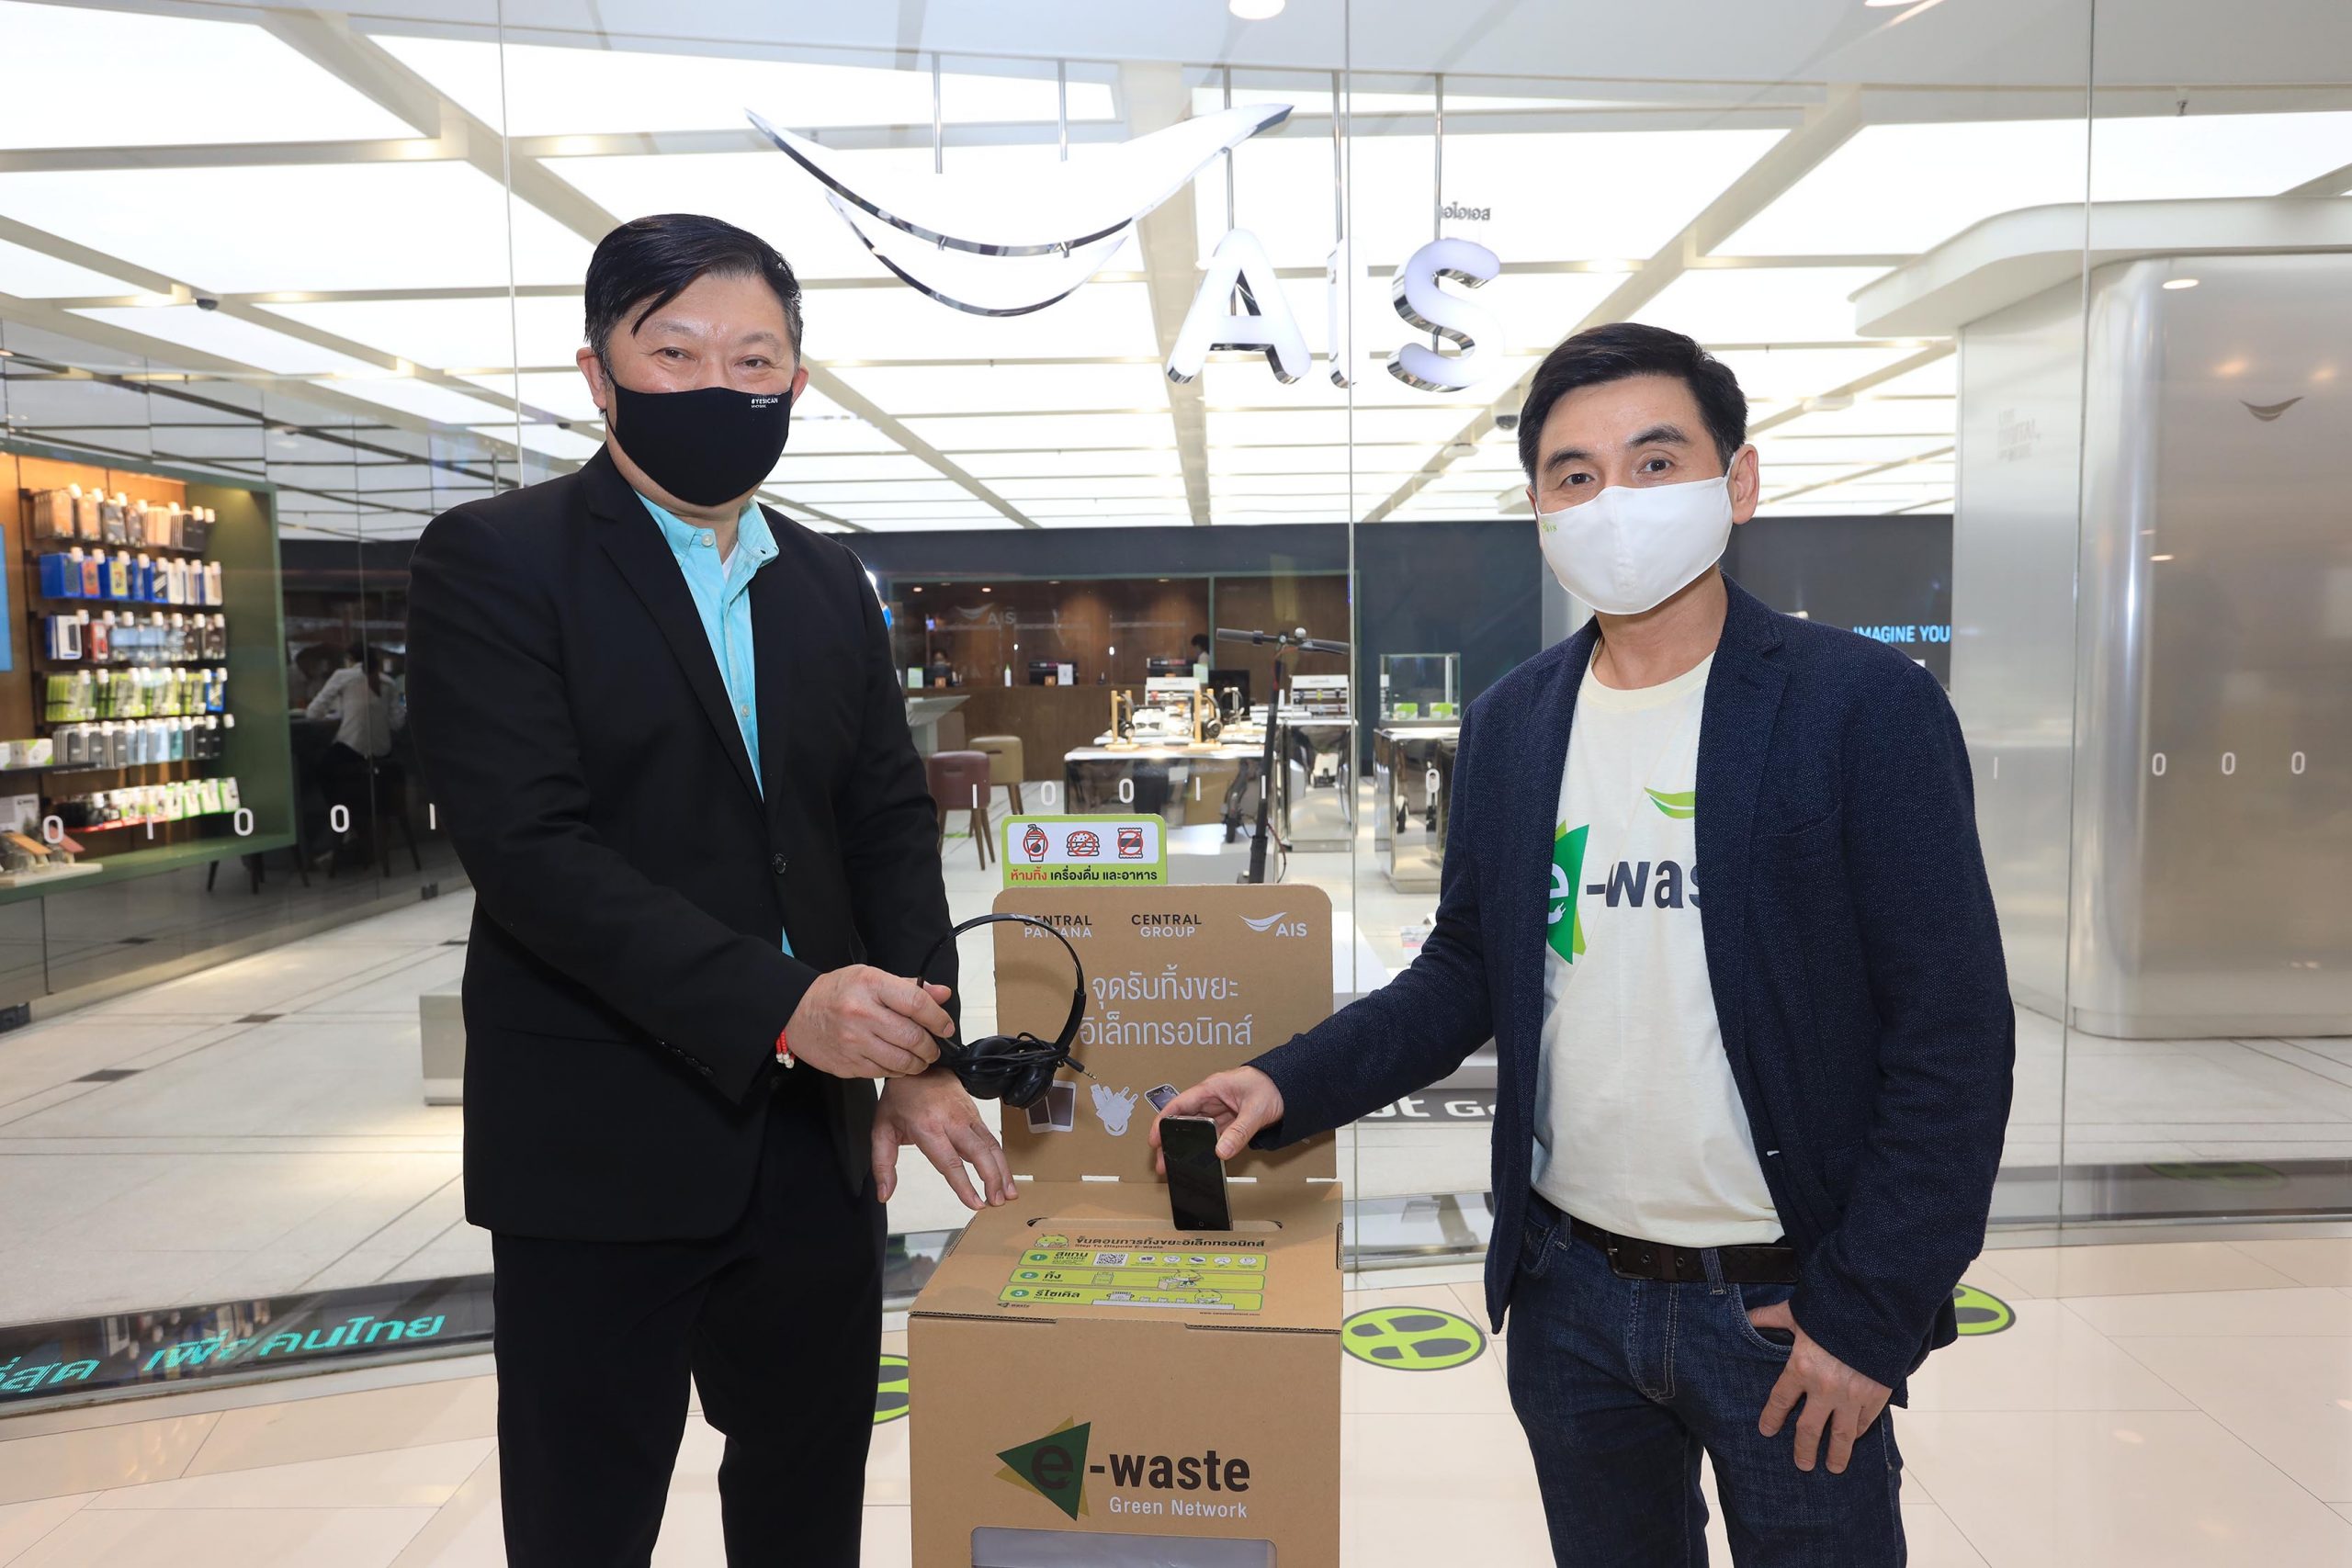 เอไอเอส ร่วมกับ กลุ่มเซ็นทรัล เปิดแคมเปญ คนไทยไร้ E-Waste ขยายจุดรับทิ้ง E-Waste ที่ศูนย์การค้า 34 แห่งและอาคารสำนักงาน